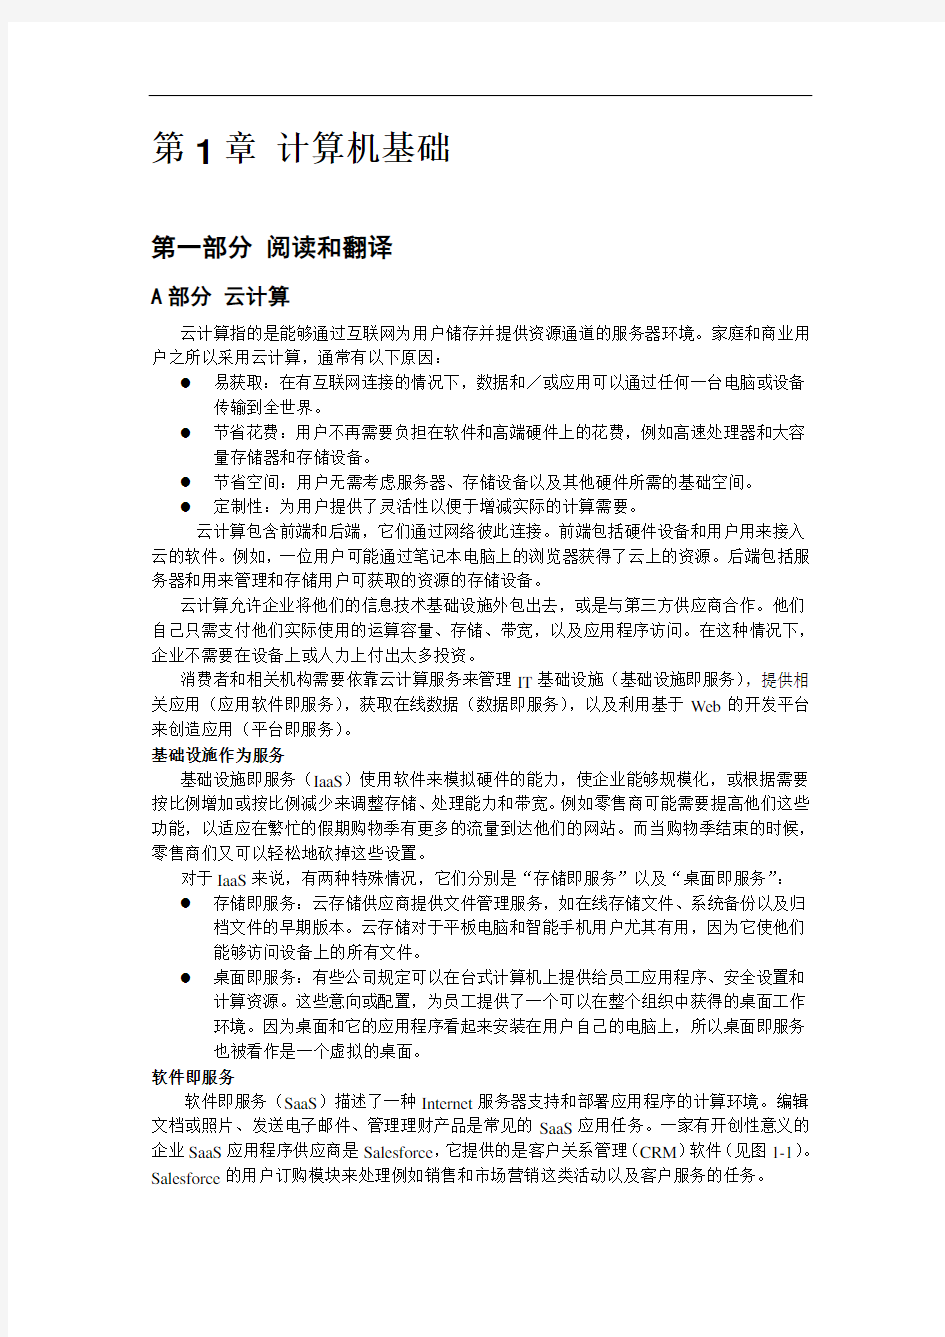 大学实用计算机英语教程第2版翻译机工版译1_中文-1